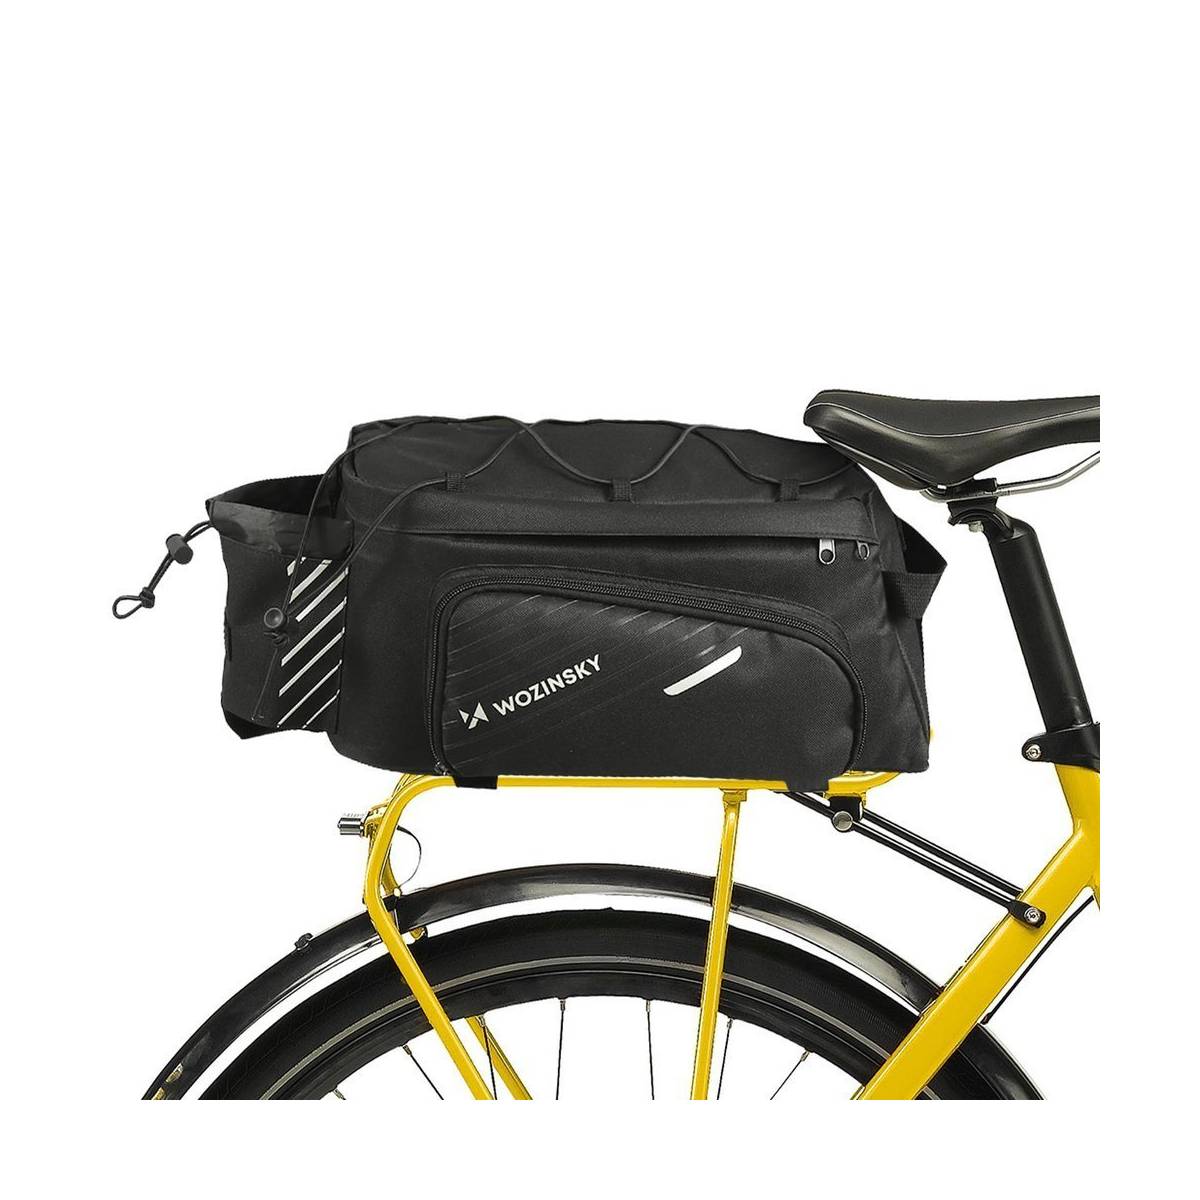 Cykeltaske til bagagebærer siderum, regncover og bærerem - 9l